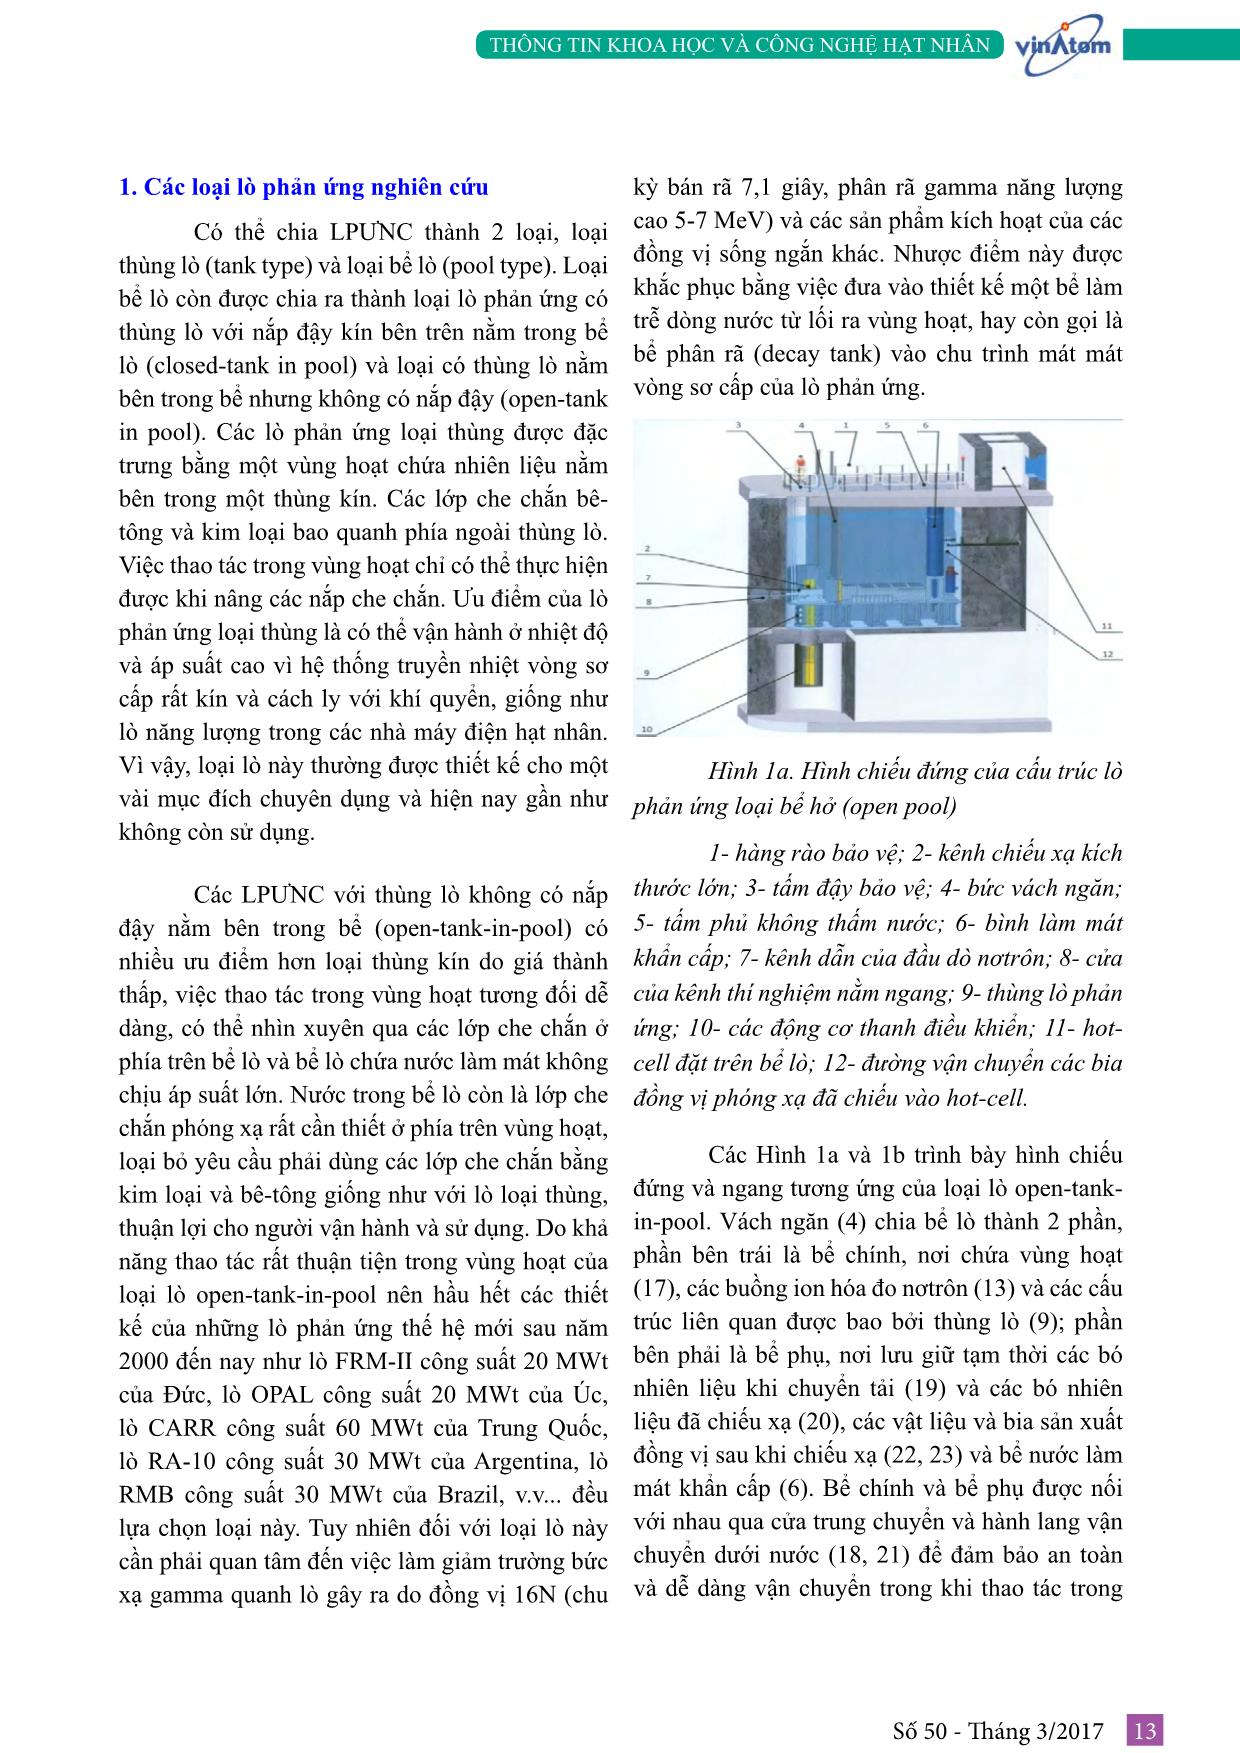 Tìm hiểu về công nghệ lò phản ứng nghiên cứu trang 3